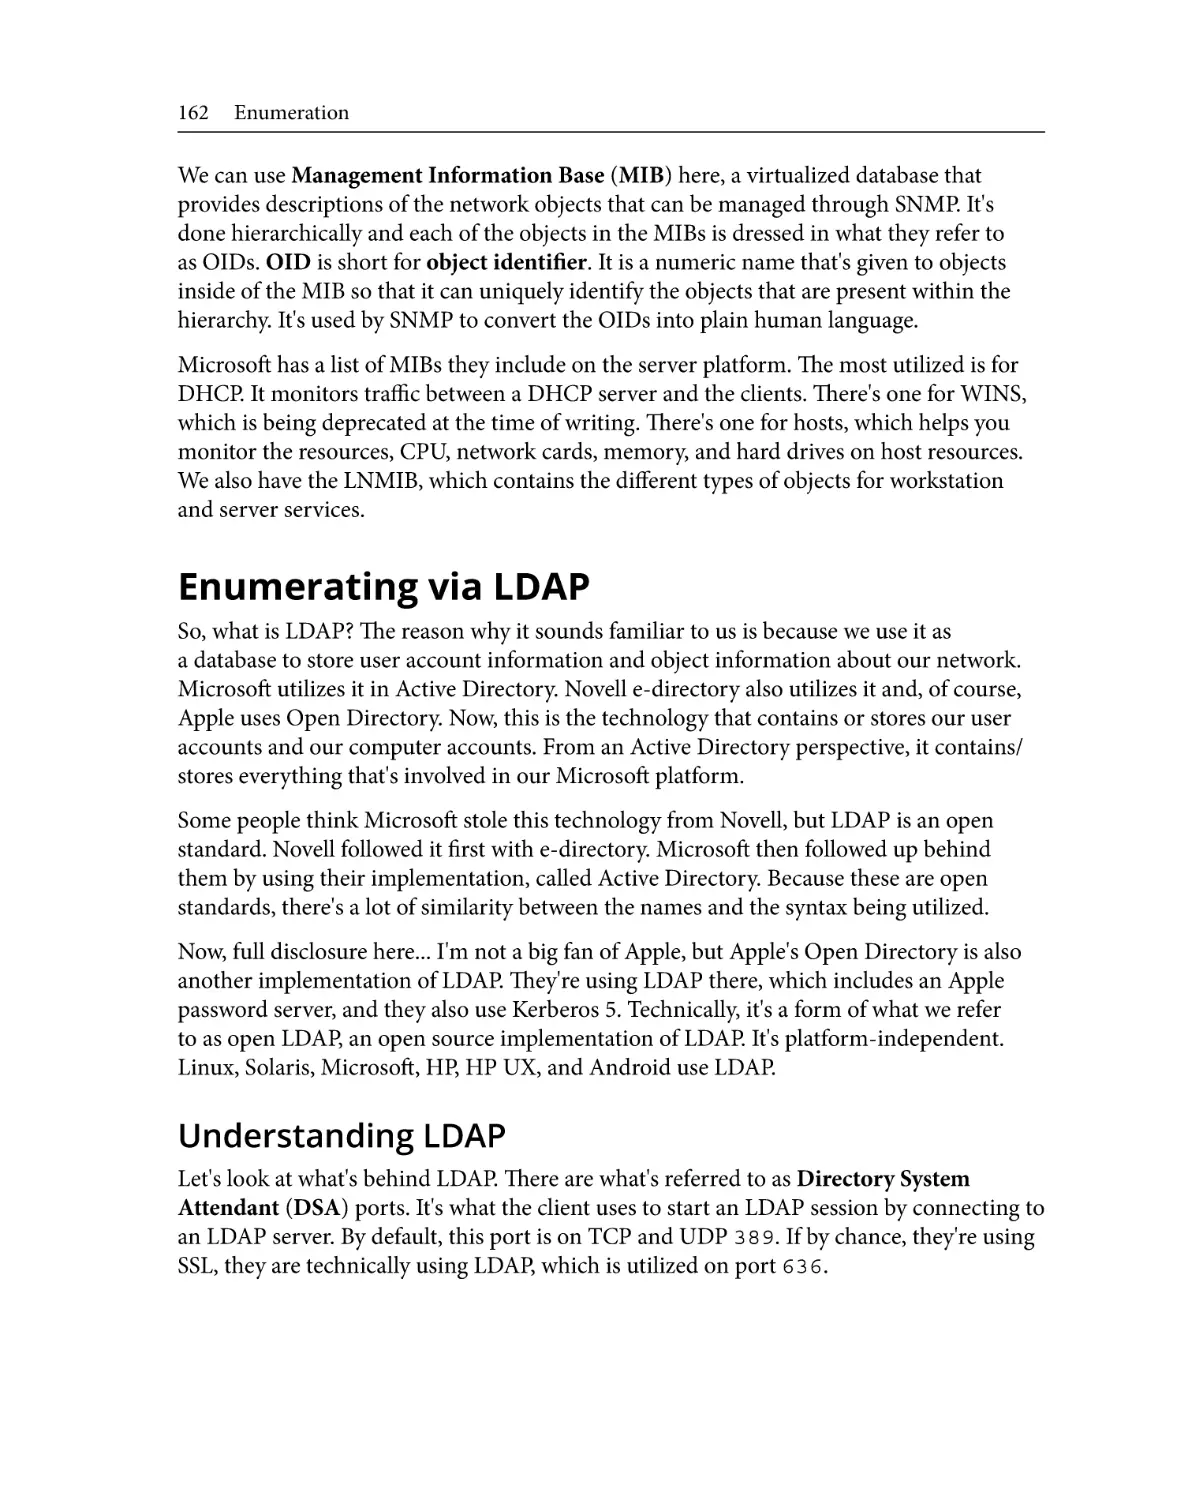 Enumerating via LDAP
Understanding LDAP